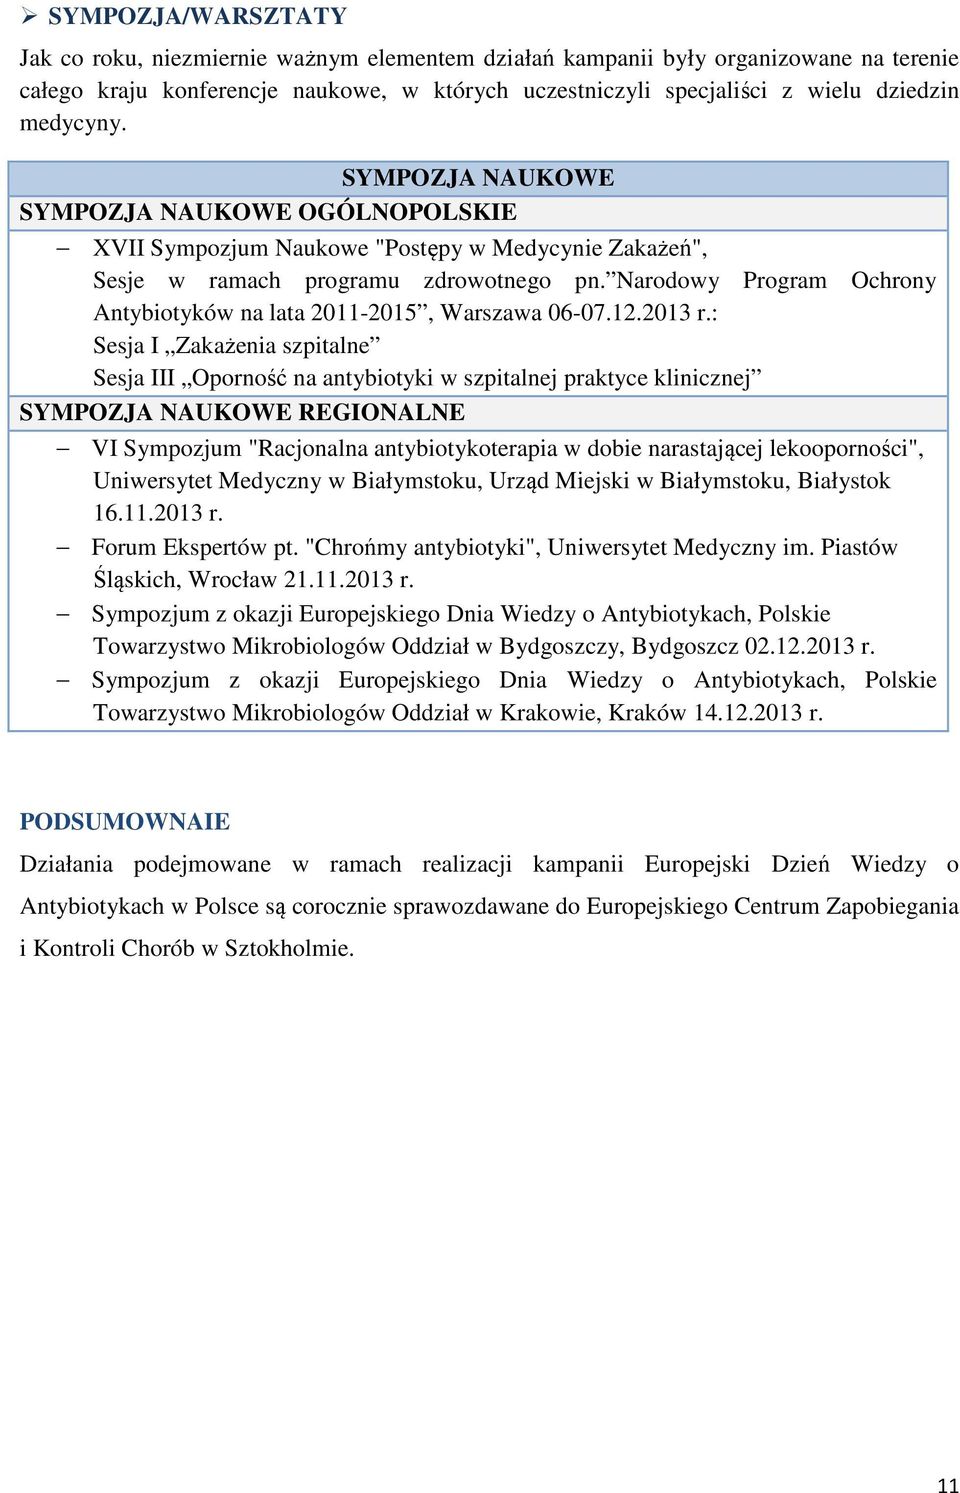 Narodowy Program Ochrony Antybiotyków na lata 2011-2015, Warszawa 06-07.12.2013 r.